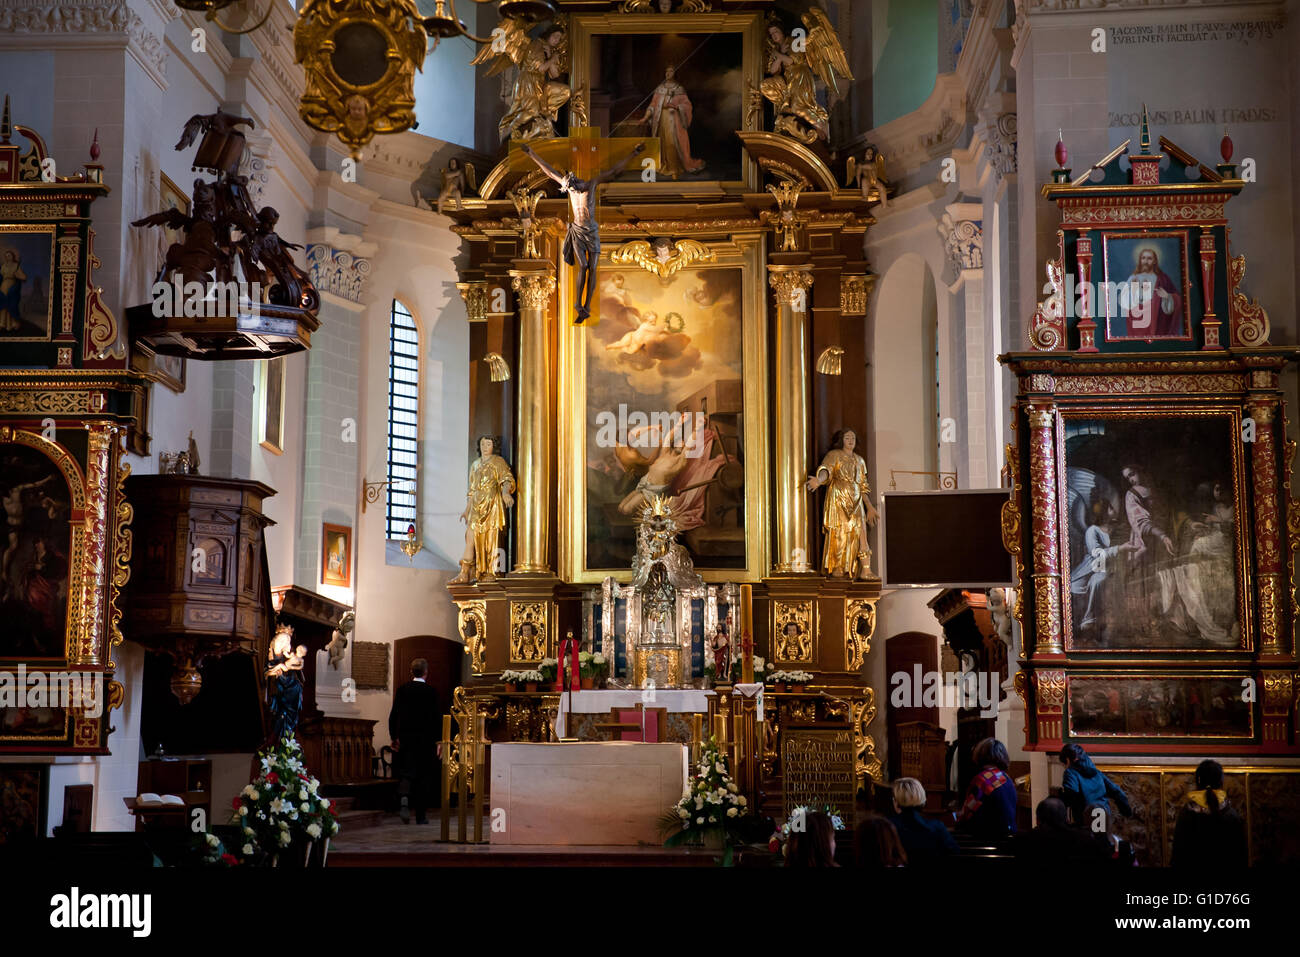 Iglesia parroquial altar en Kazimierz Dolny, de Polonia, de Europa, visitando la construcción interior de la parroquia de la Iglesia Católica Romana. Foto de stock